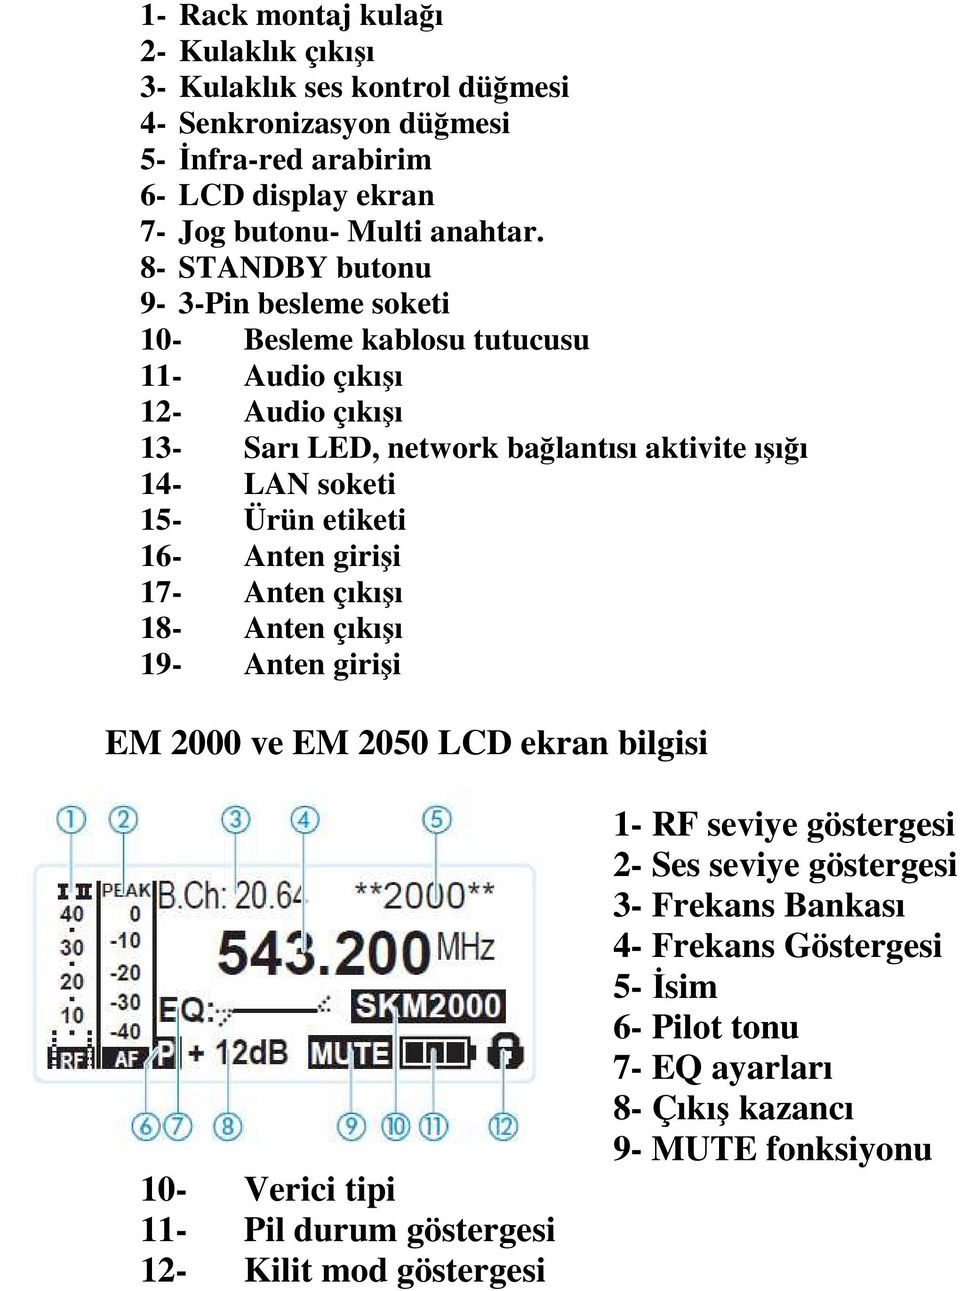 Ürün etiketi 16- Anten girişi 17- Anten çıkışı 18- Anten çıkışı 19- Anten girişi EM 2000 ve EM 2050 LCD ekran bilgisi 10- Verici tipi 11- Pil durum göstergesi 12- Kilit mod